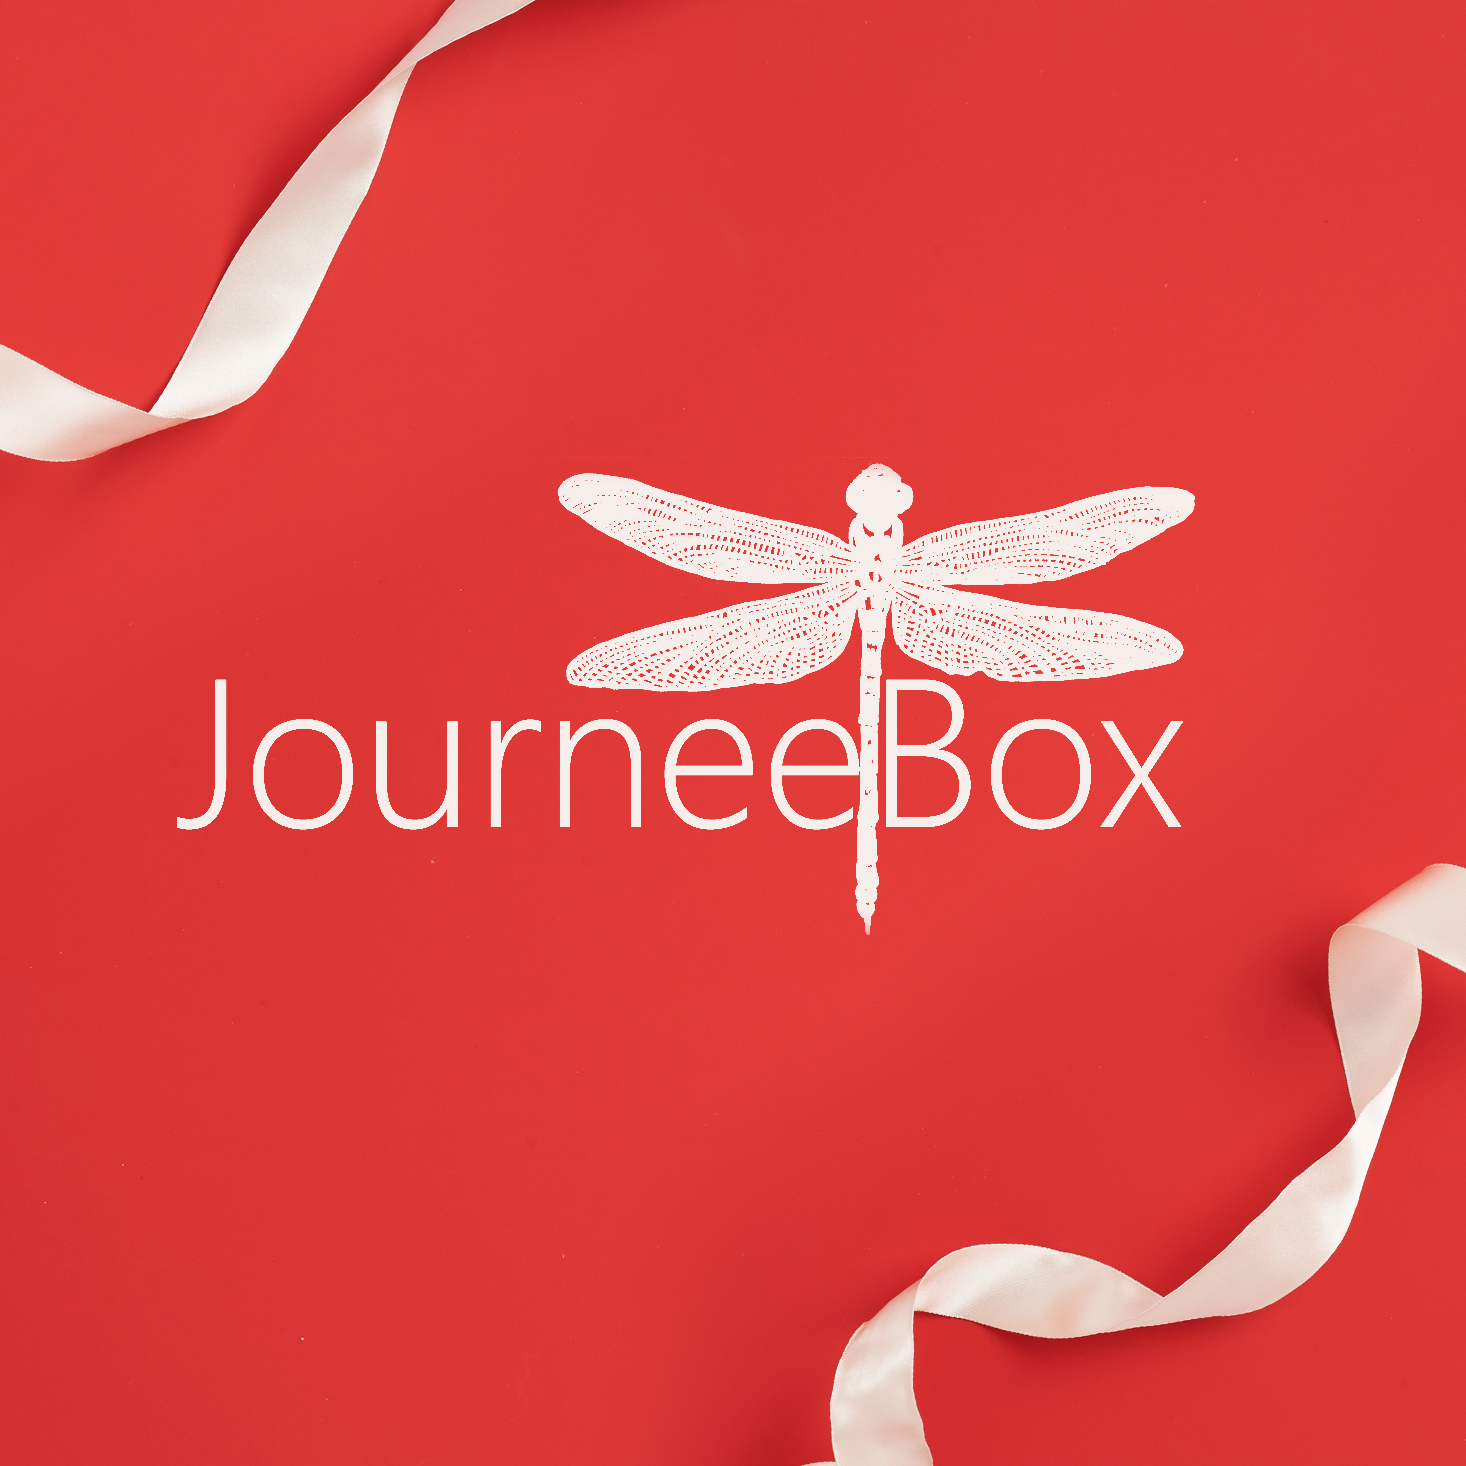 JourneeBox – Better Than Black Friday 2020 Deal!